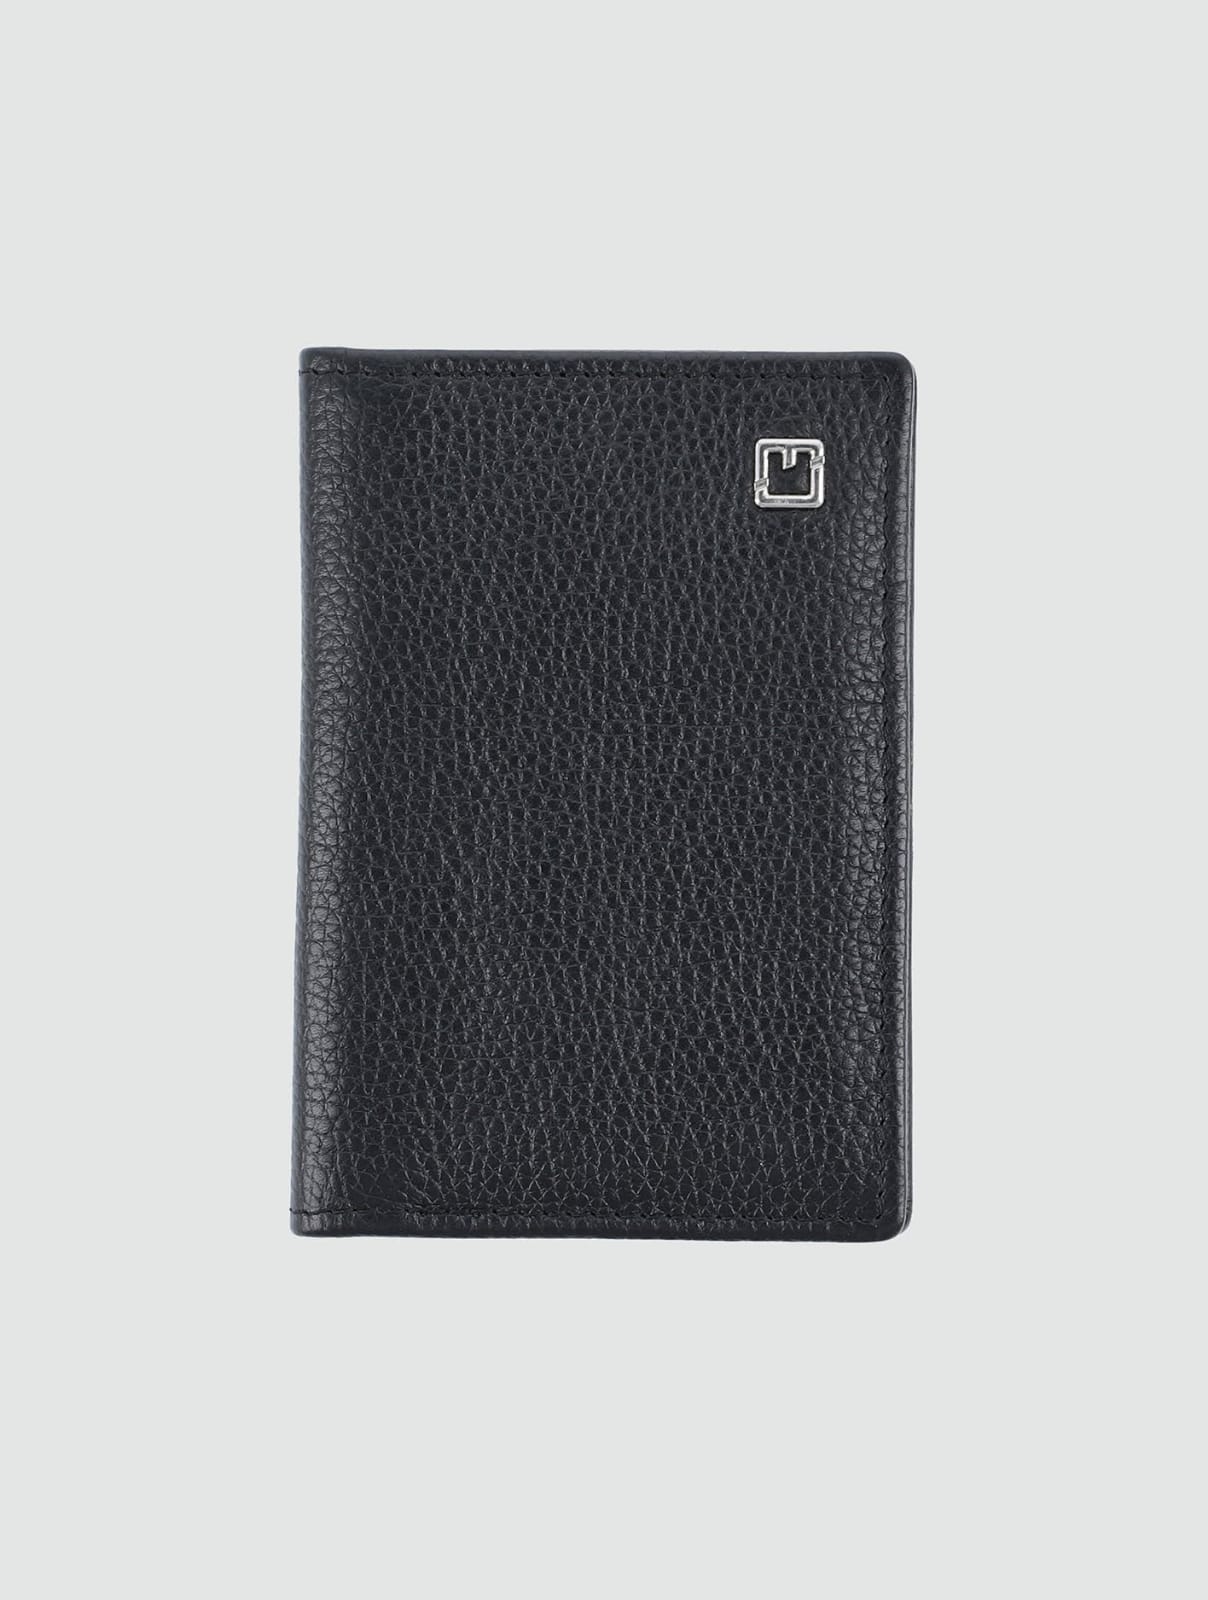 Black Leather Slim Bi-fold Card Holder Wallet